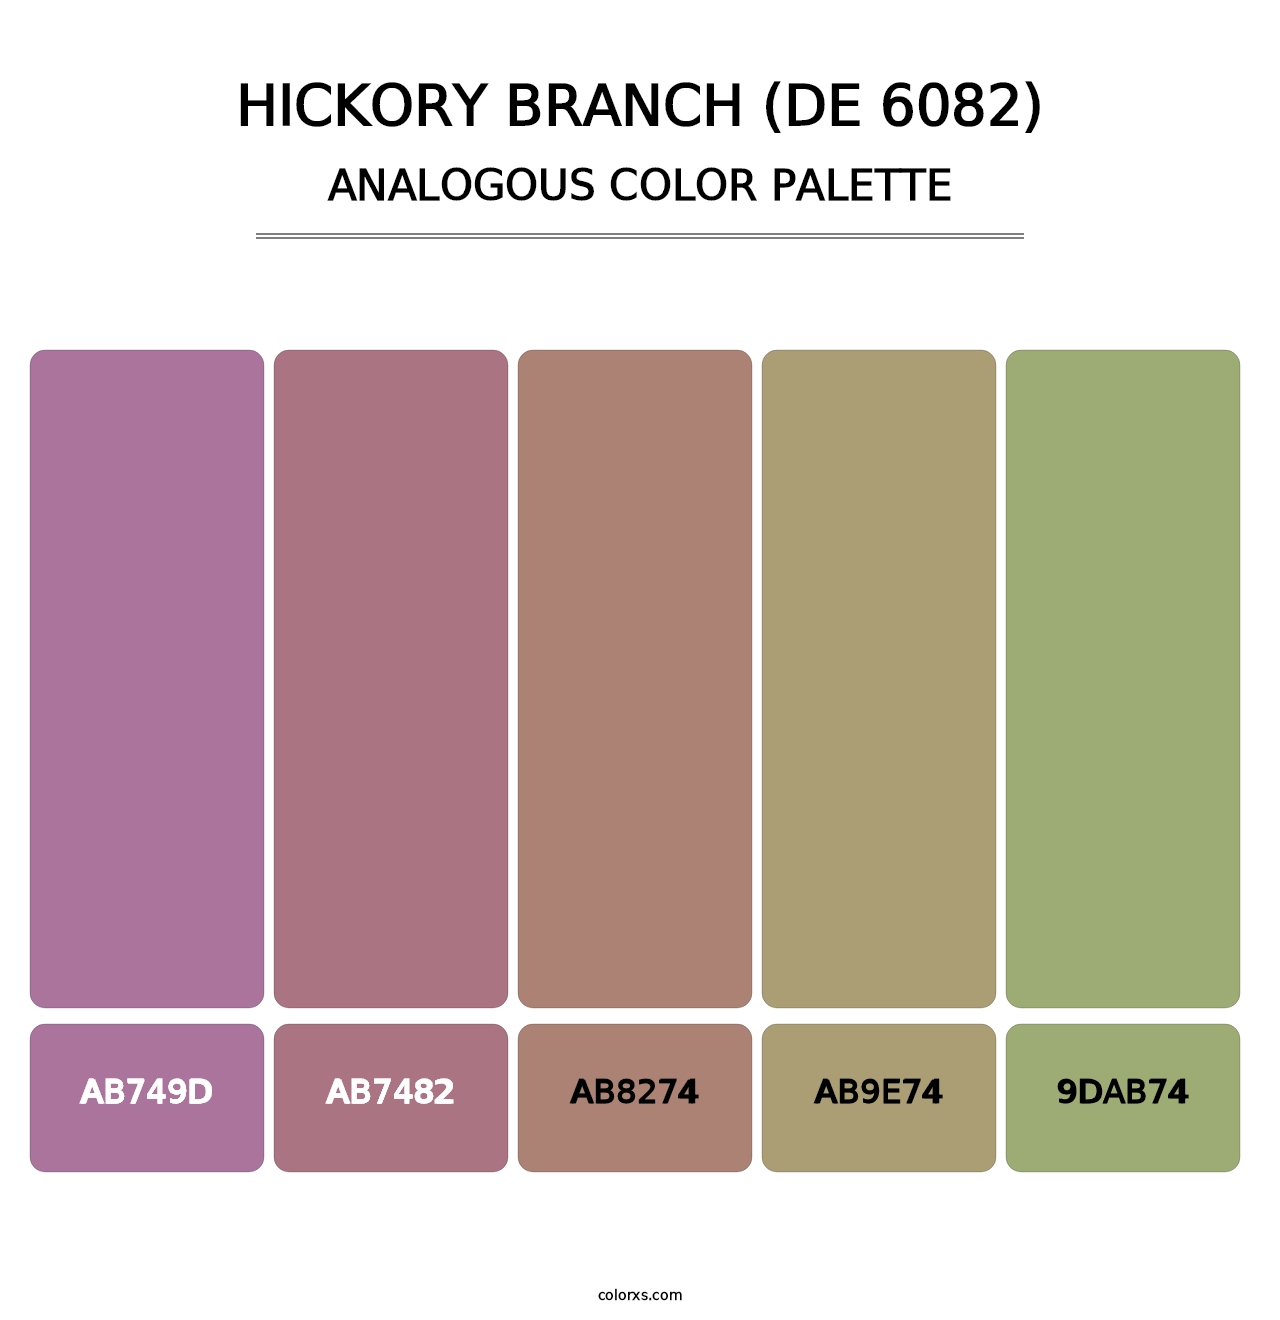 Hickory Branch (DE 6082) - Analogous Color Palette